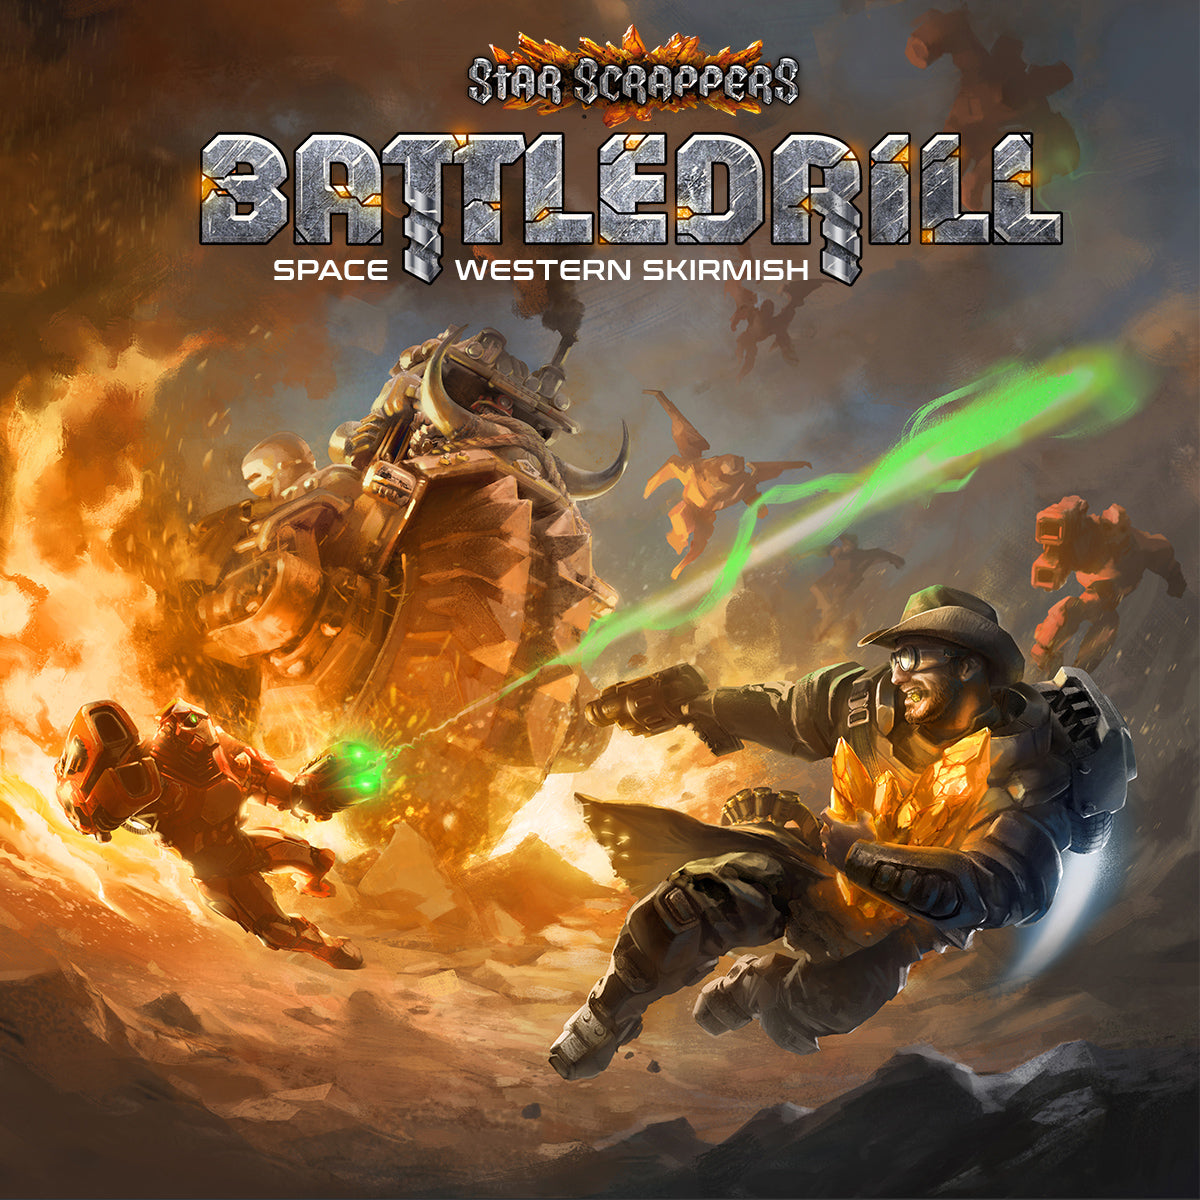 Survivor Söldner Battledrill Kickstarter Brettspiele, Rollenspiel Maler